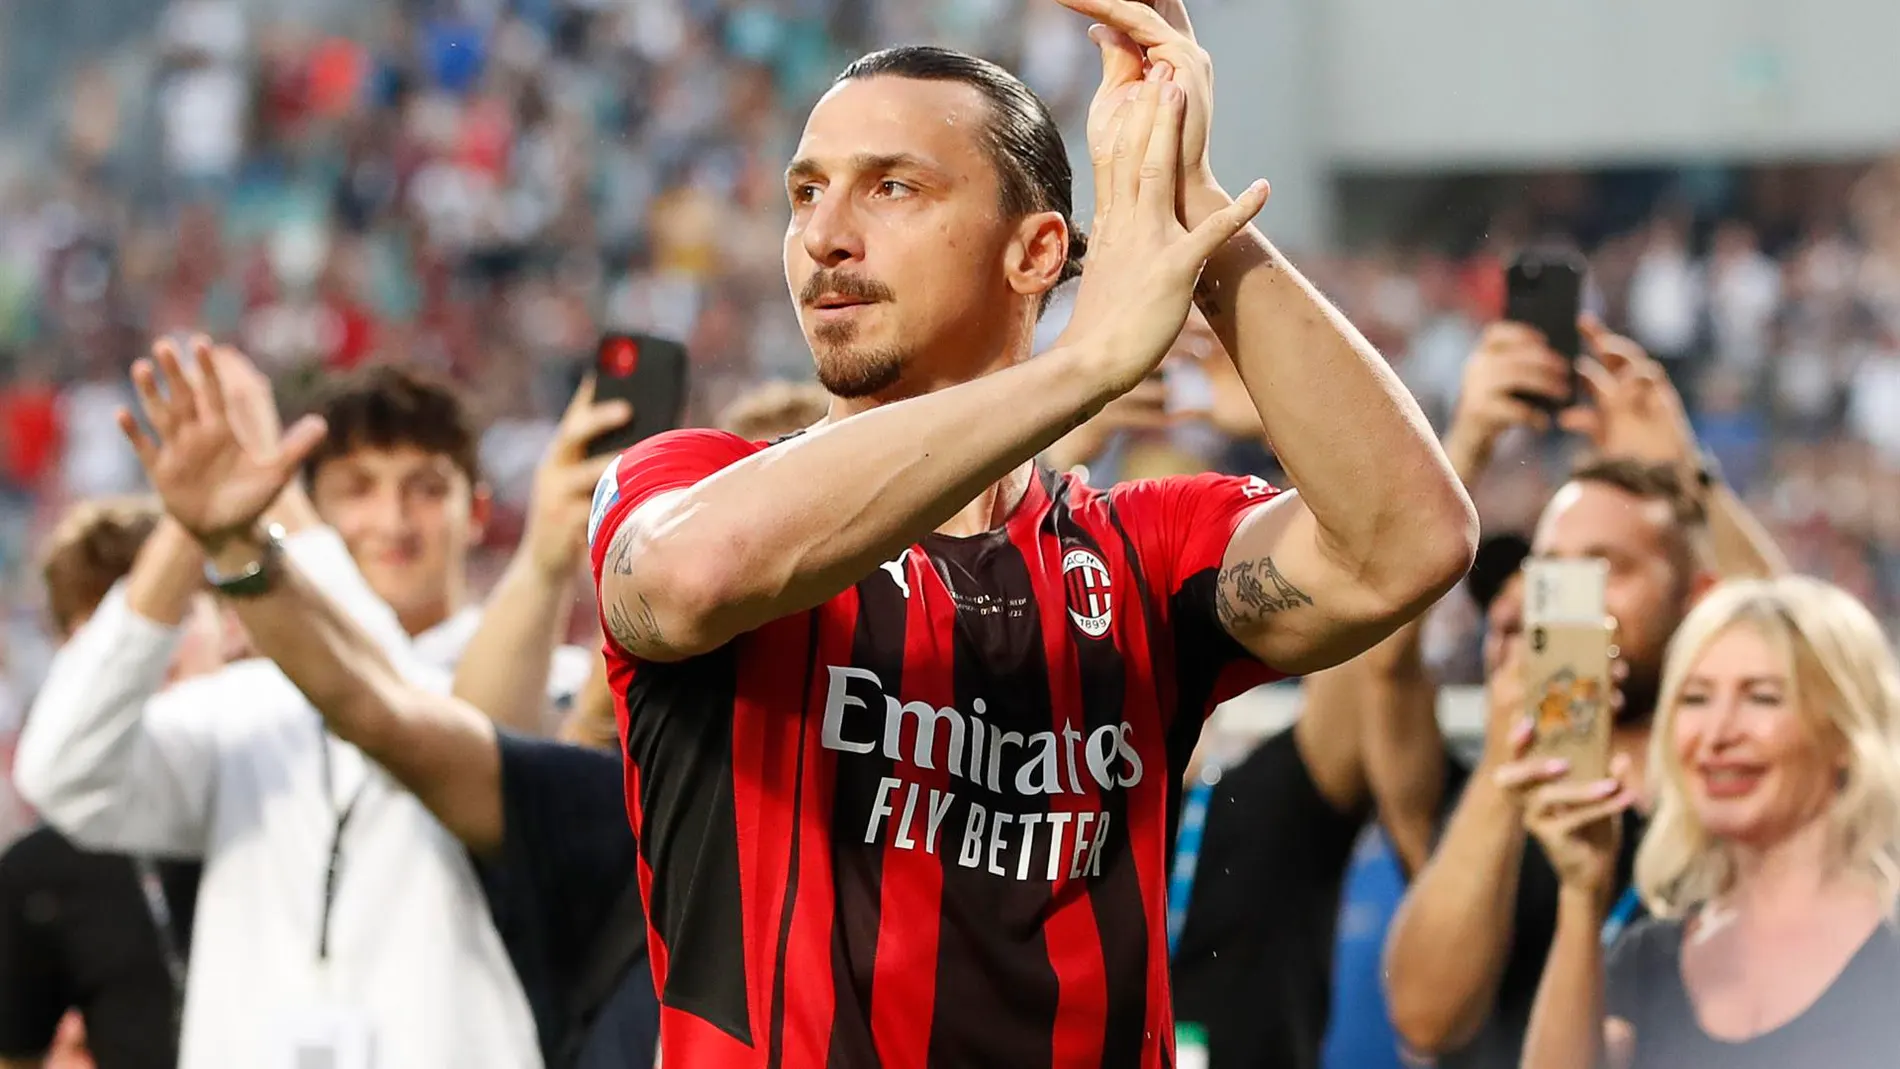 El show de Ibrahimovic tras ganar la Serie A con el Milan